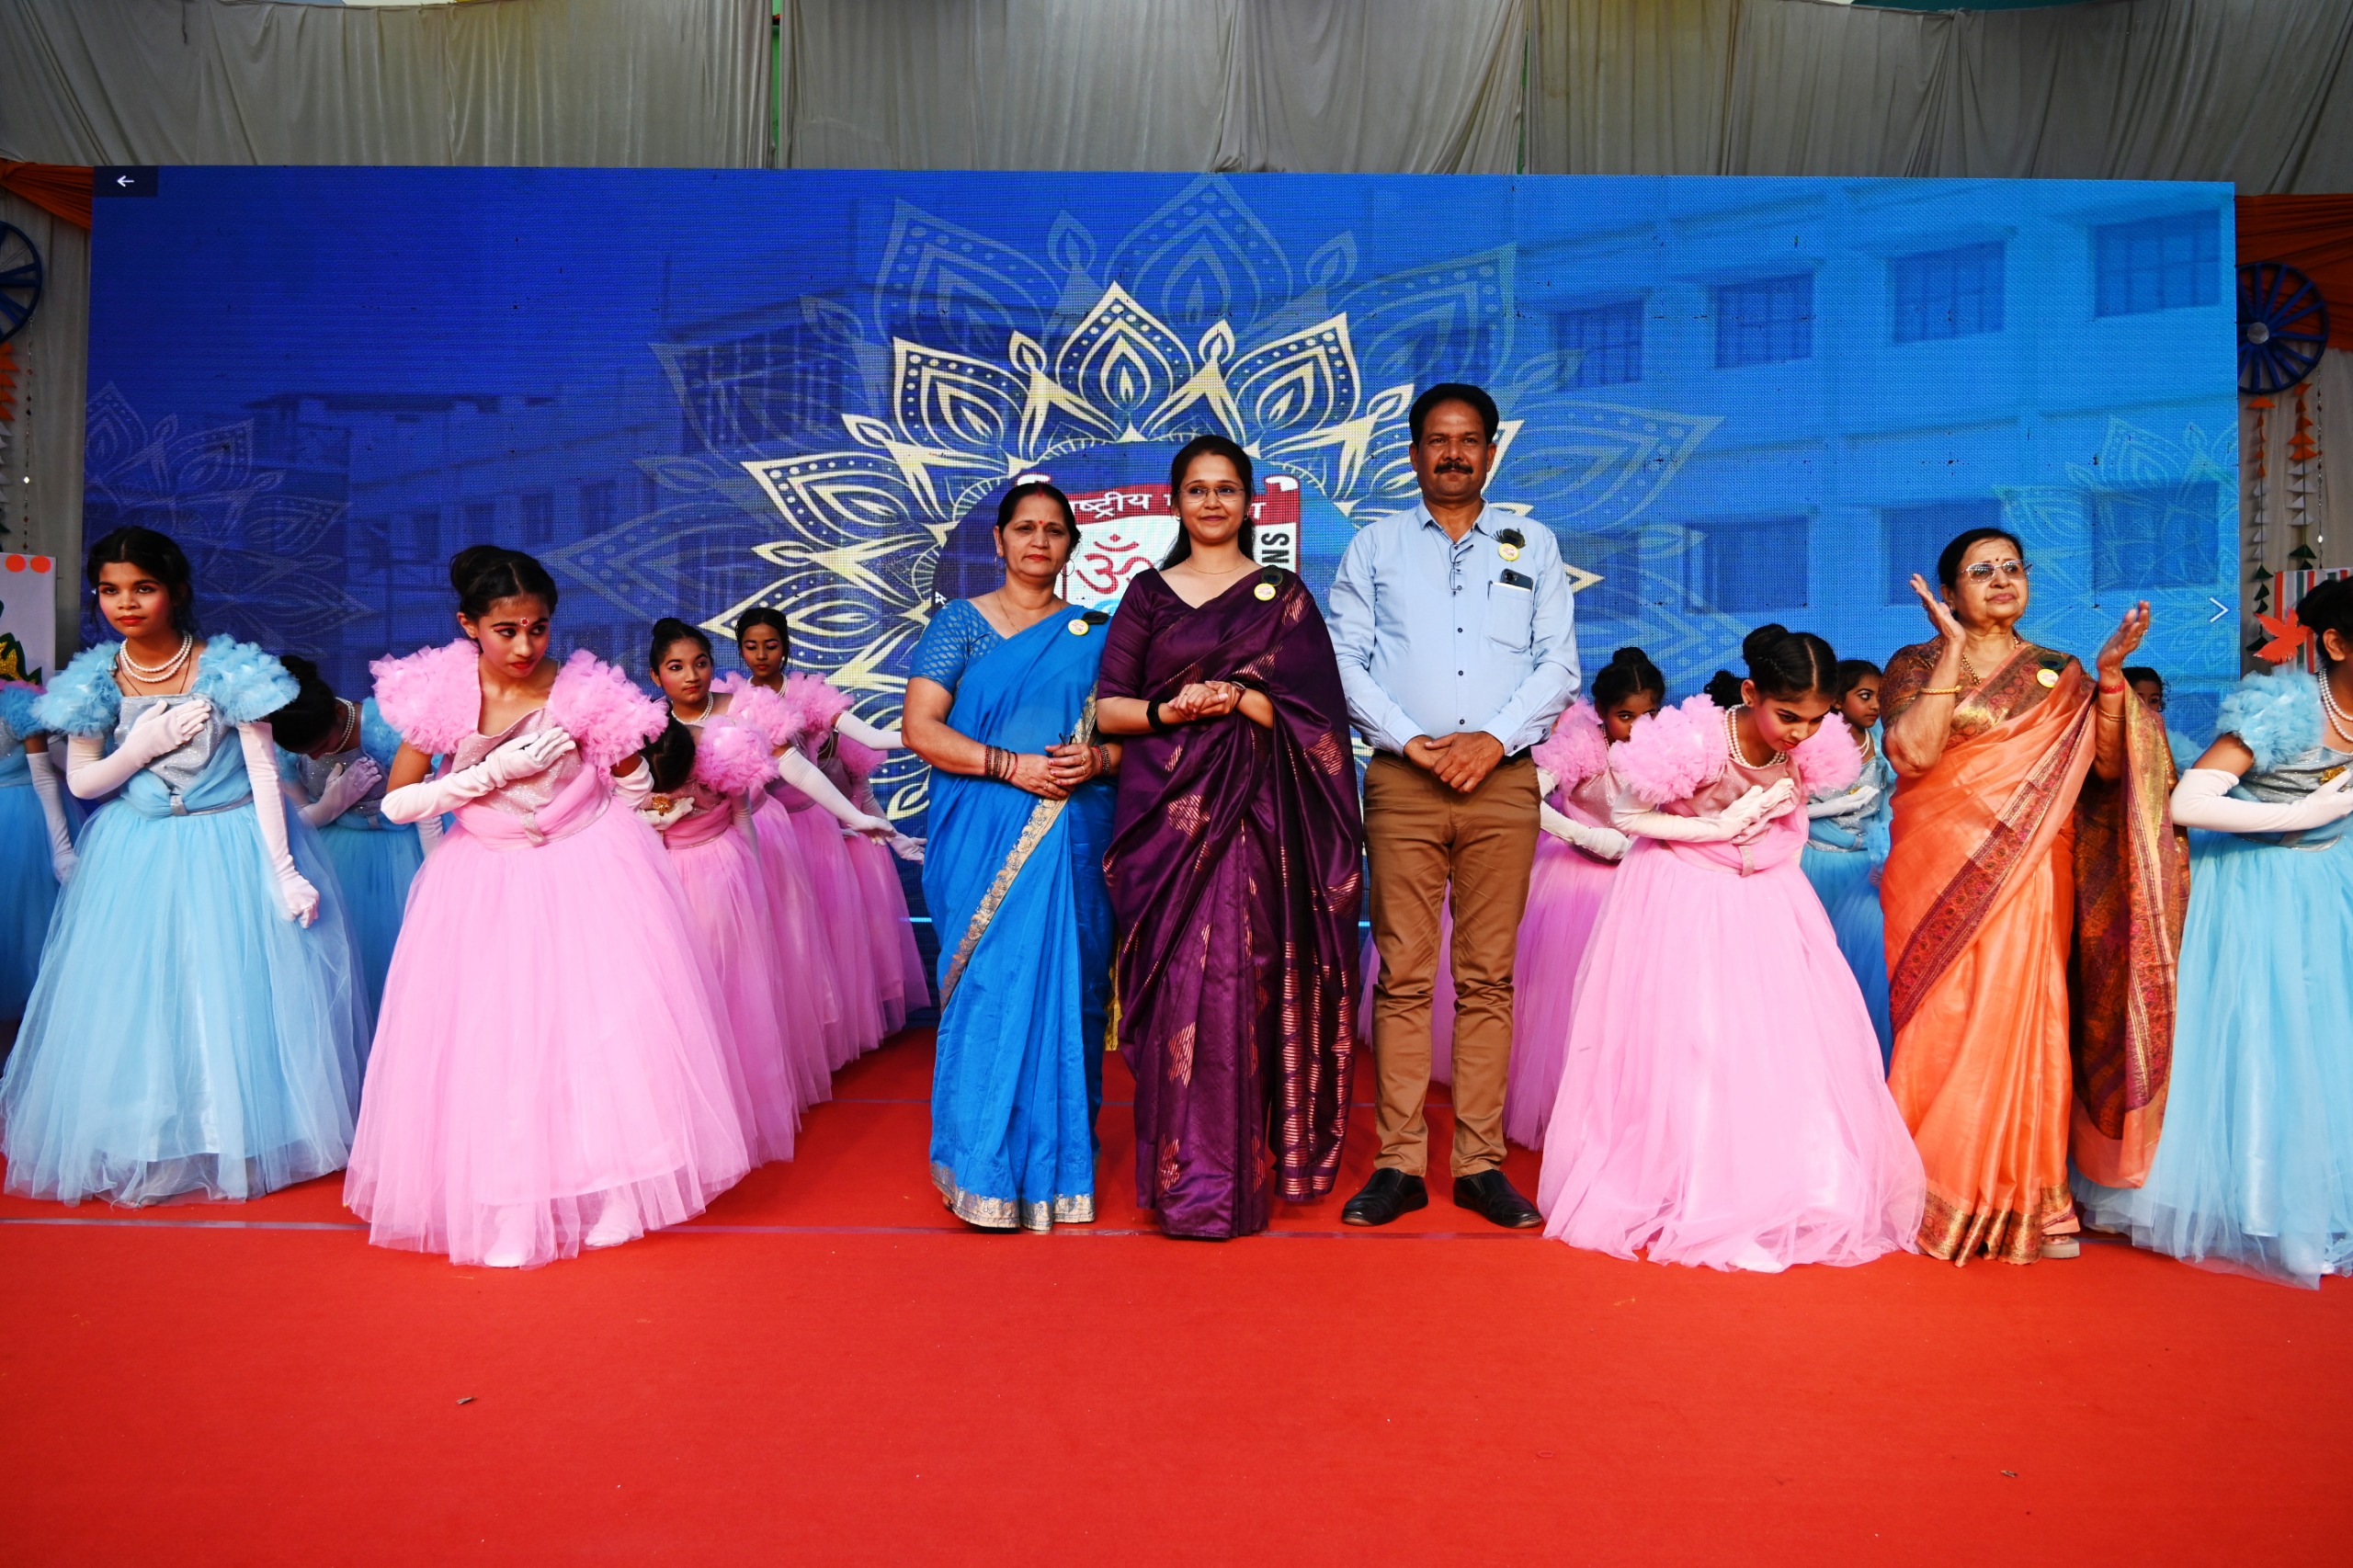 उत्तर प्रदेश डेस्क लखनऊ ( आर एल पाण्डेय )। राजाजीपुरम स्थित सेंट जोसेफ कॉलेज ने अपना 38 वां स्थापना दिवस एवं वार्षिक समारोह अत्यंत धूमधाम से एक से एक बढ़कर रंगारंग कार्यक्रमों की प्रस्तुति के साथ विद्यालय की संस्थापक अध्यक्ष श्रीमती पुष्पलता अग्रवाल के आशीर्वाद से हजारों की संख्या में उपस्थित अभिभावकों एवं अध्यापक अध्यापिकाओं के साथ मिलकर मनाया।